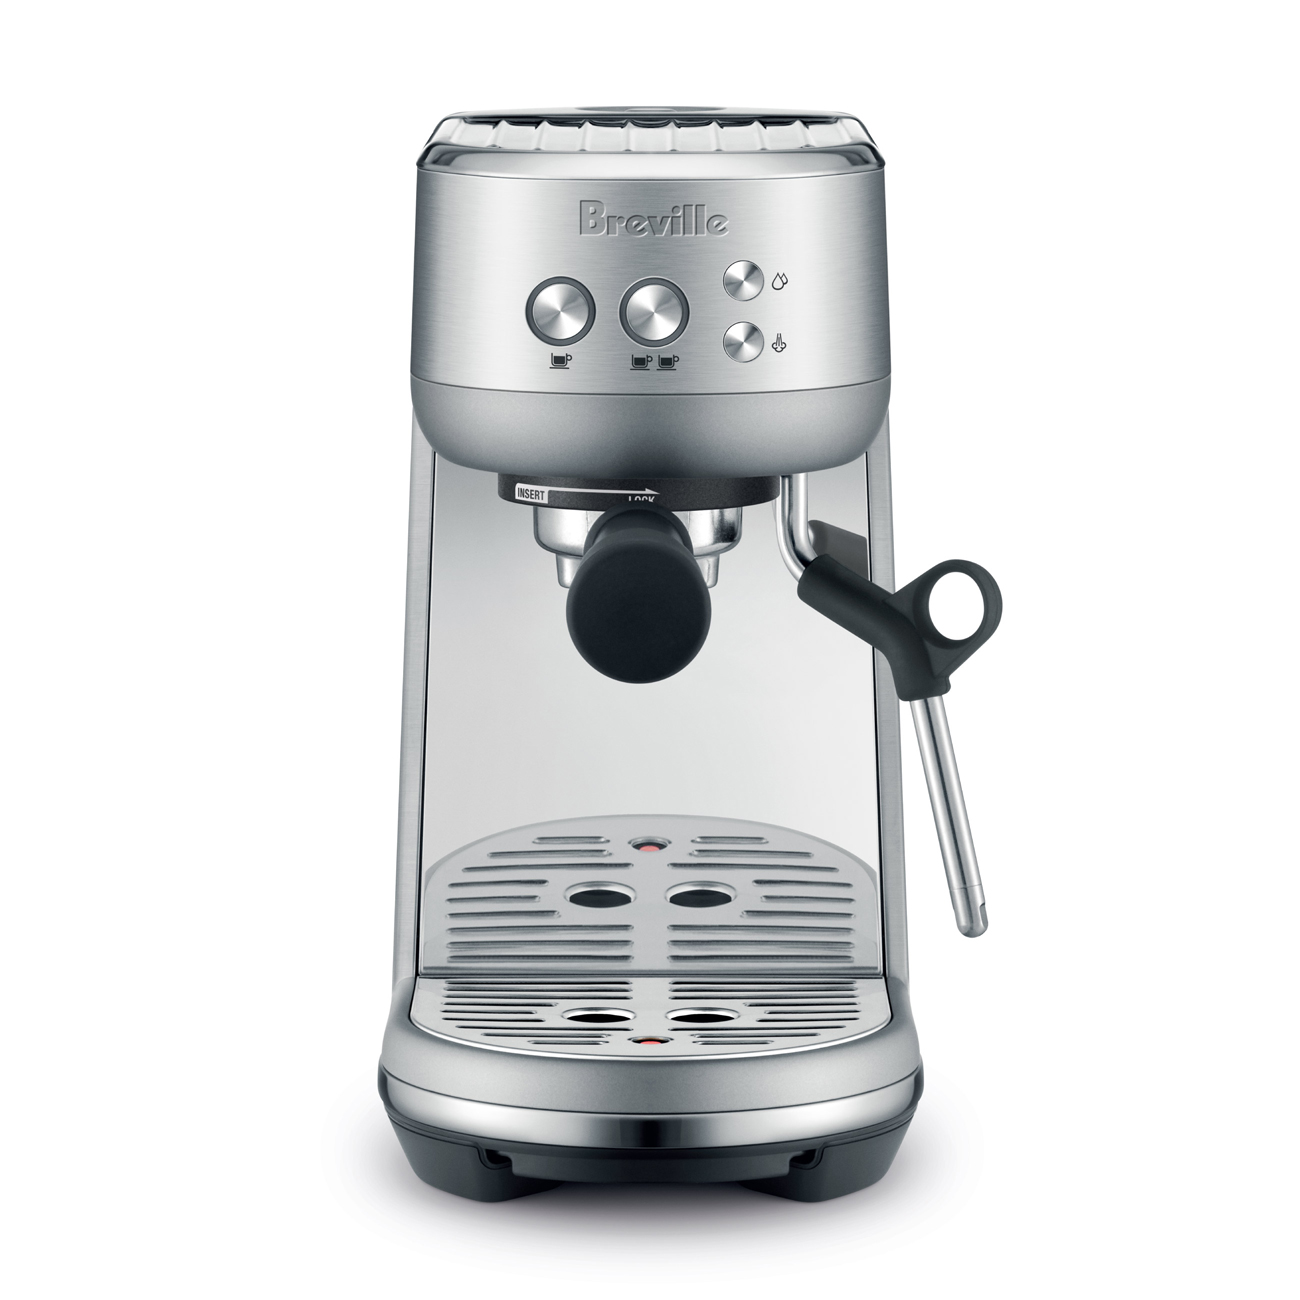 the Bambino™ Espresso Machine